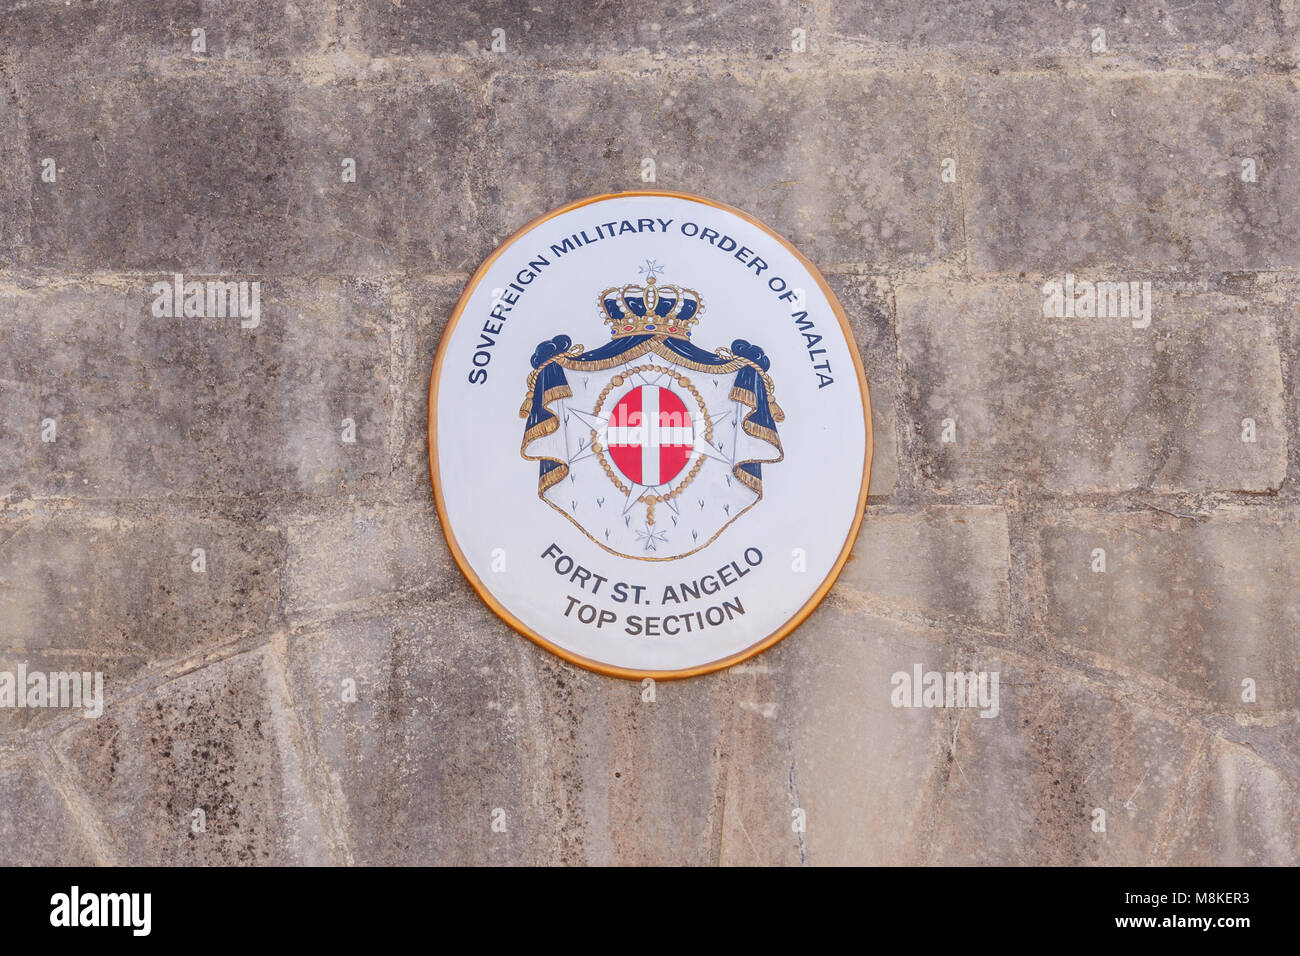 Diplomatische Wappen des Ordens von Malta über dem Tor zum oberen Teil des historischen Fort St. Angelo in Malta. Stockfoto